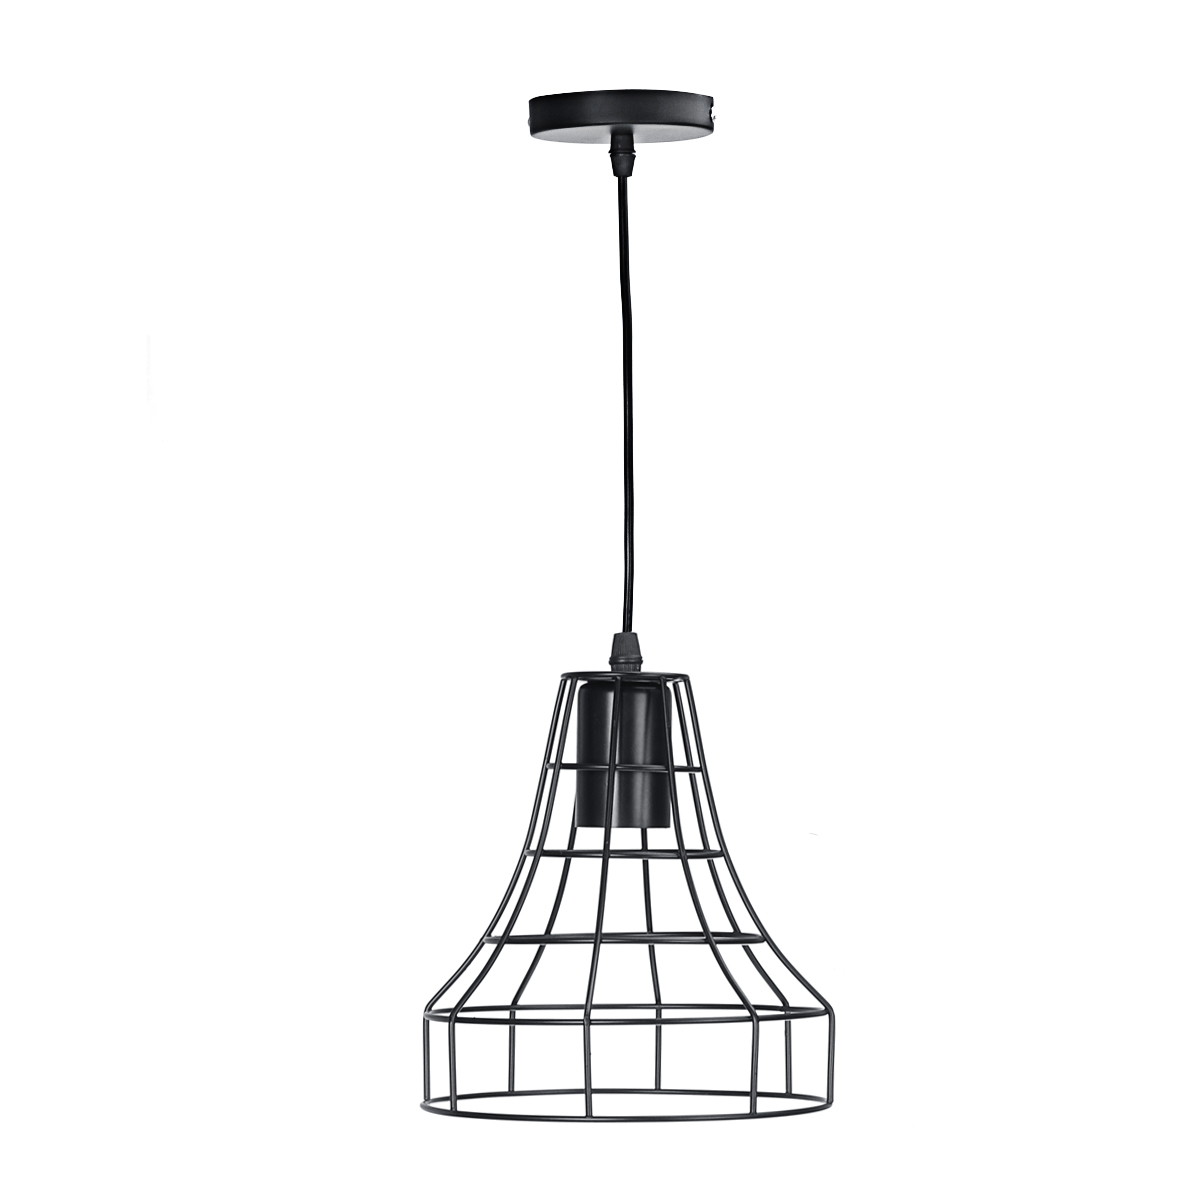 E27-Vintage-Retro-Pendant-Light-Ceiling-Lamp-Home-Dining-Fixture-Decoration-1697169-2